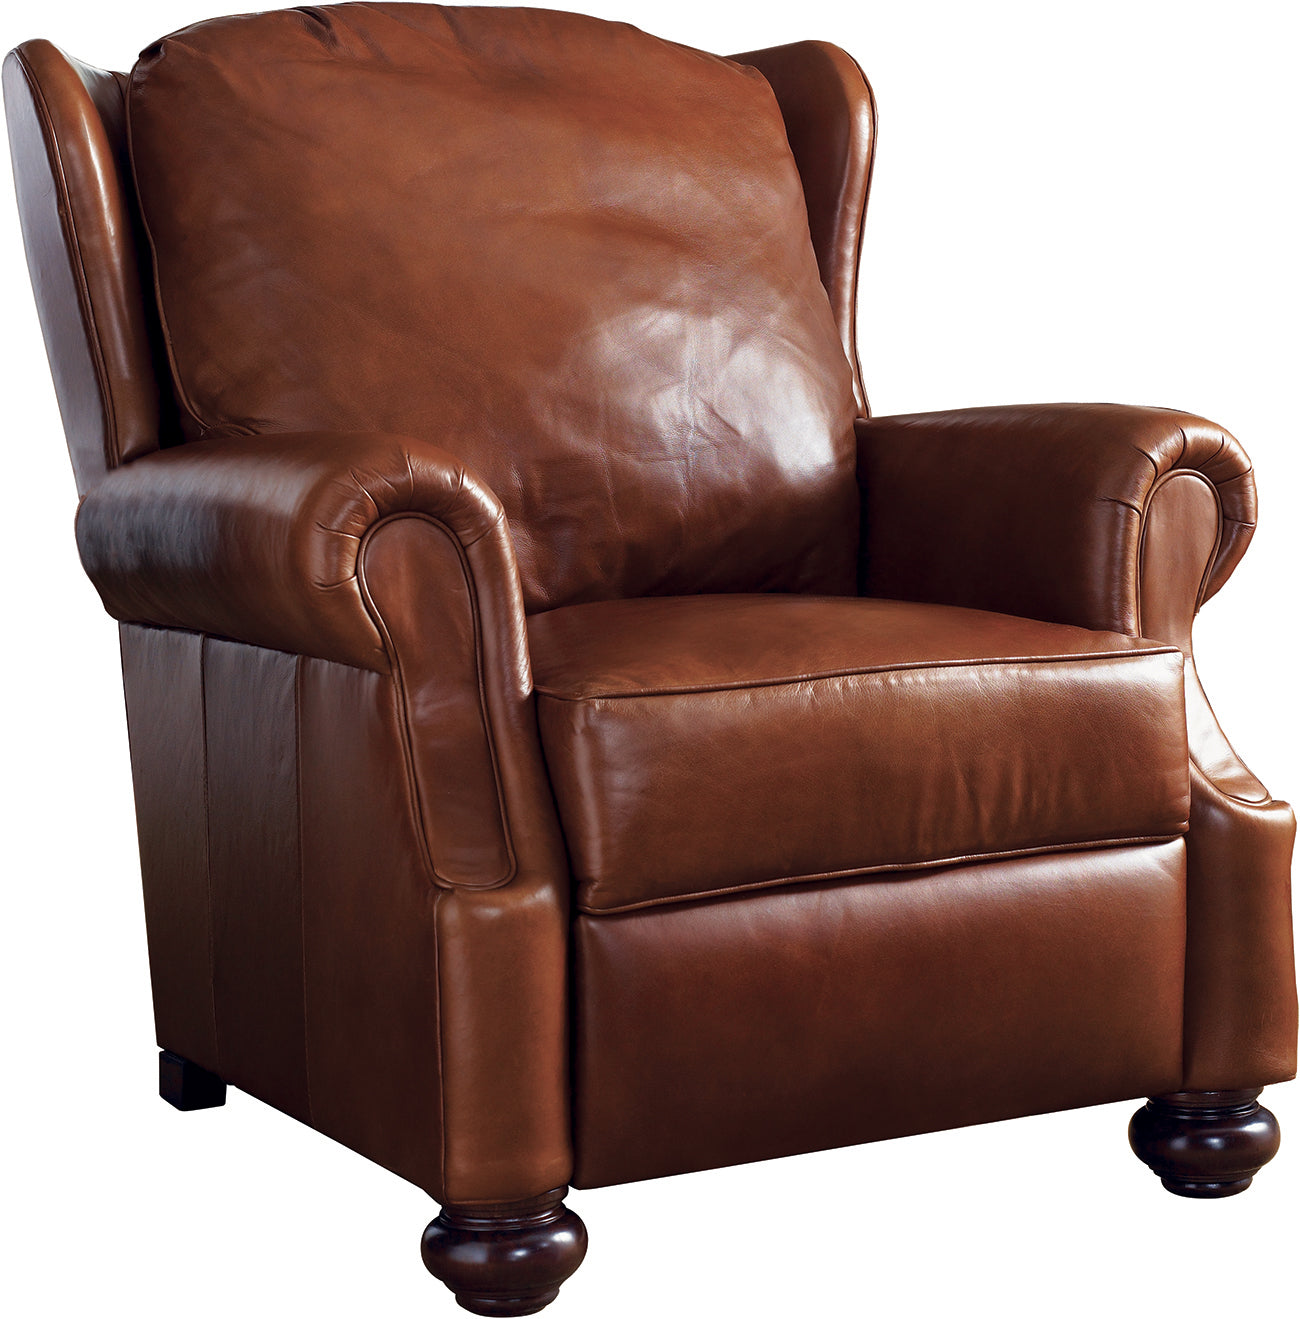 Grisham Chair - Stickley Brand